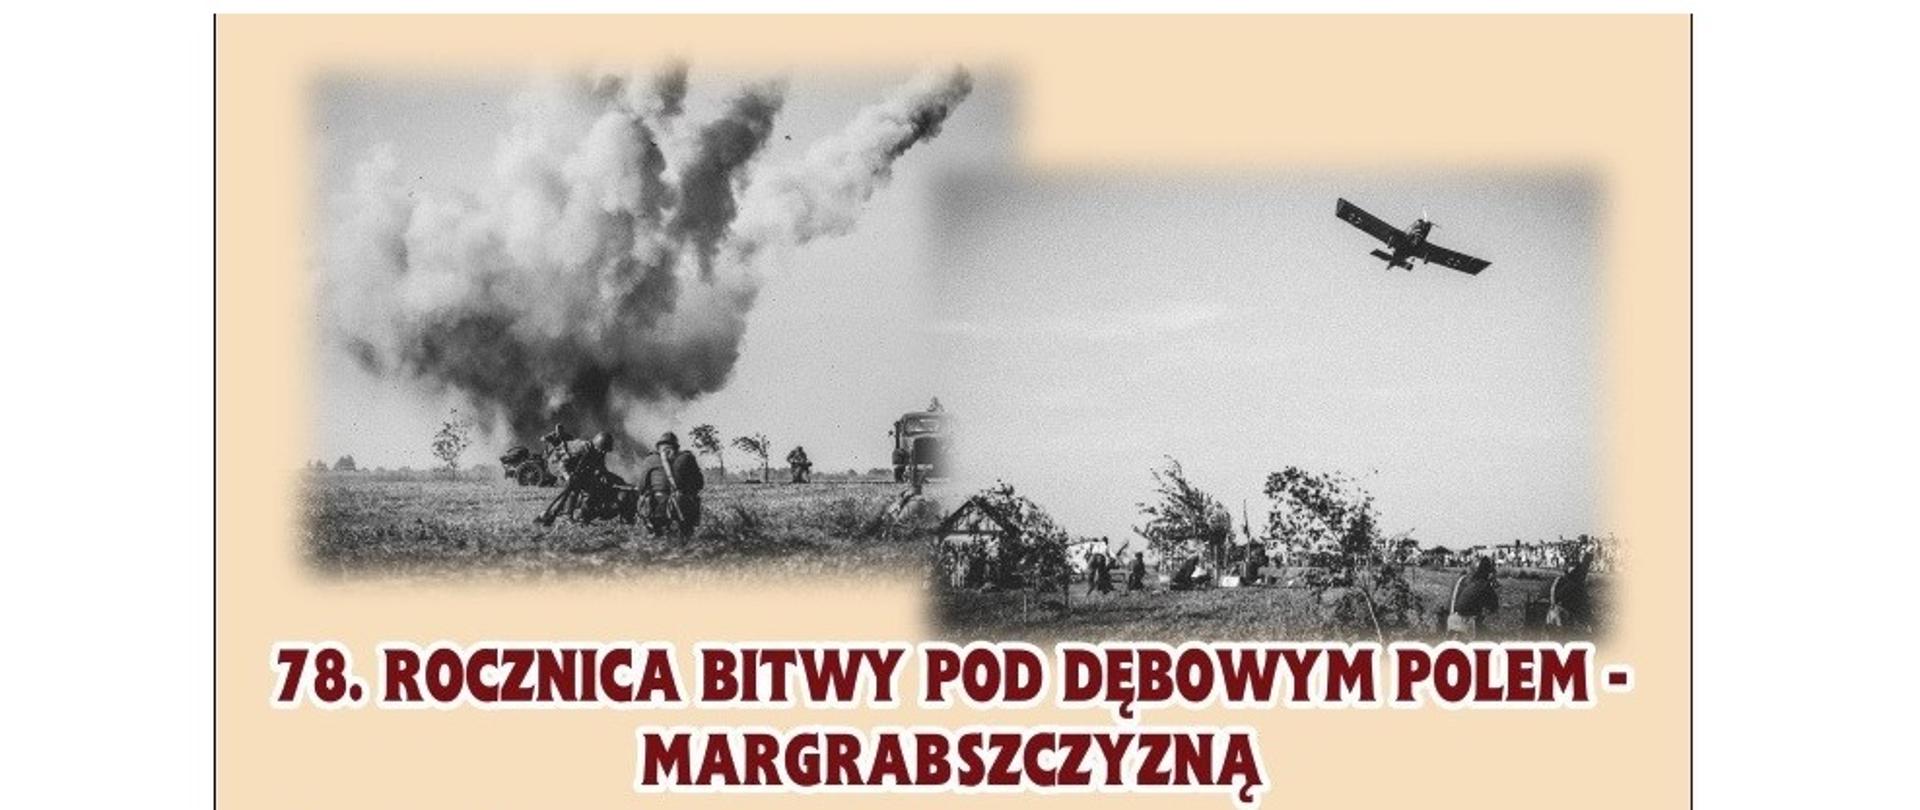 Uroczyste obchody 78. rocznicy bitwy pod Dębowym Polem.